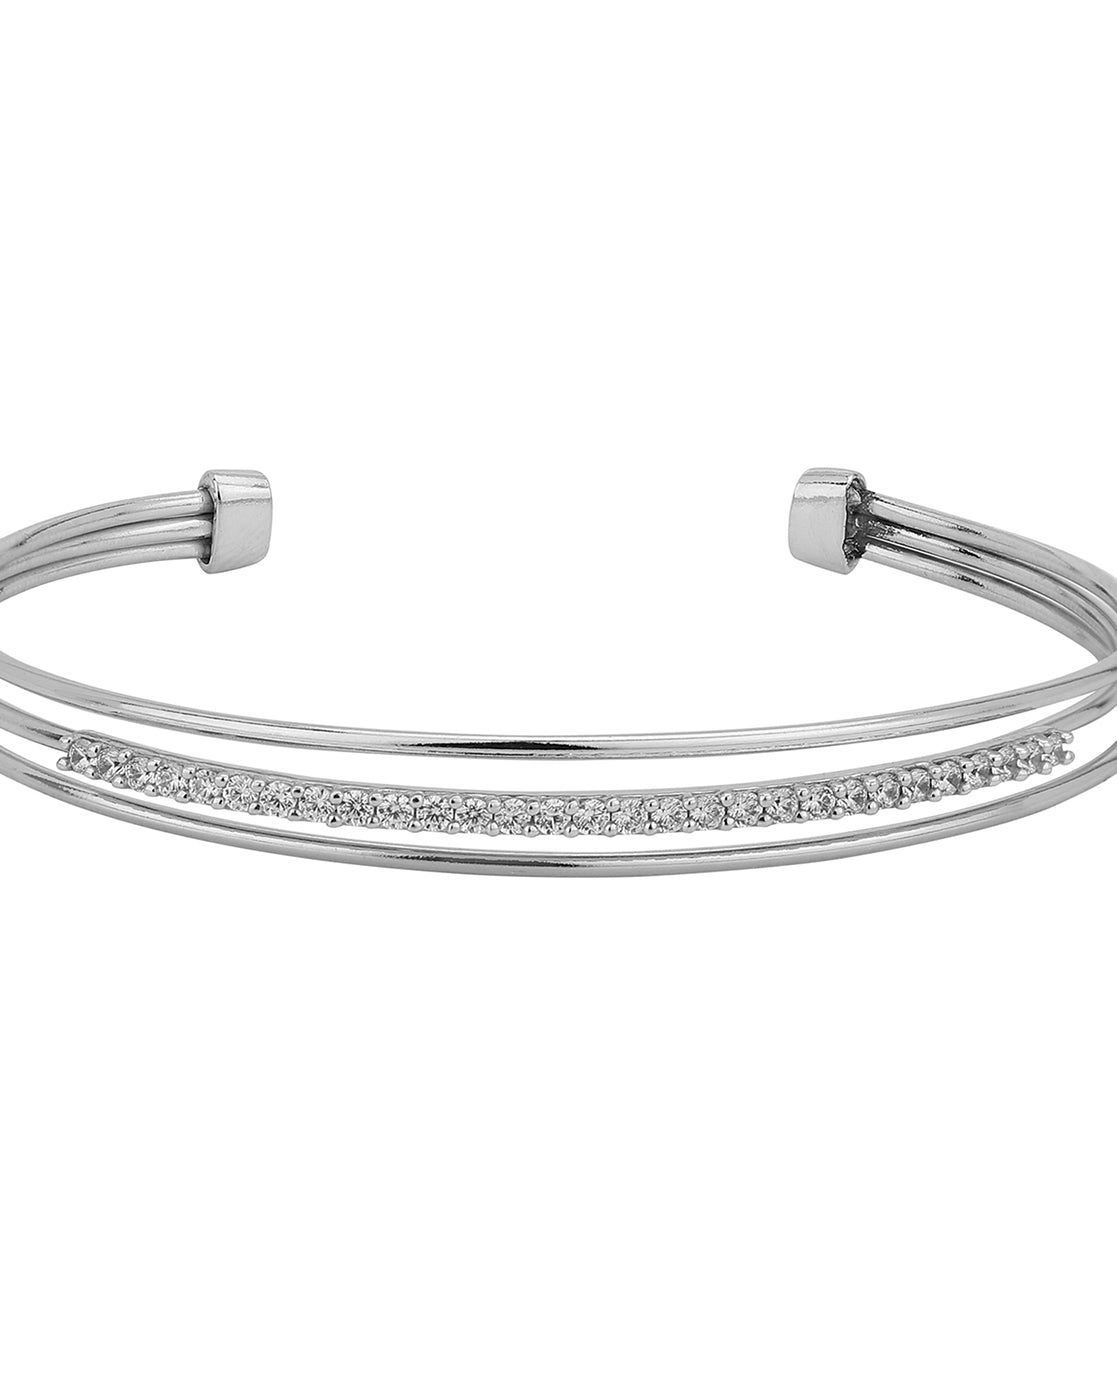 Brewster Flats Cuff Bracelet – Cape Cod Jewelers